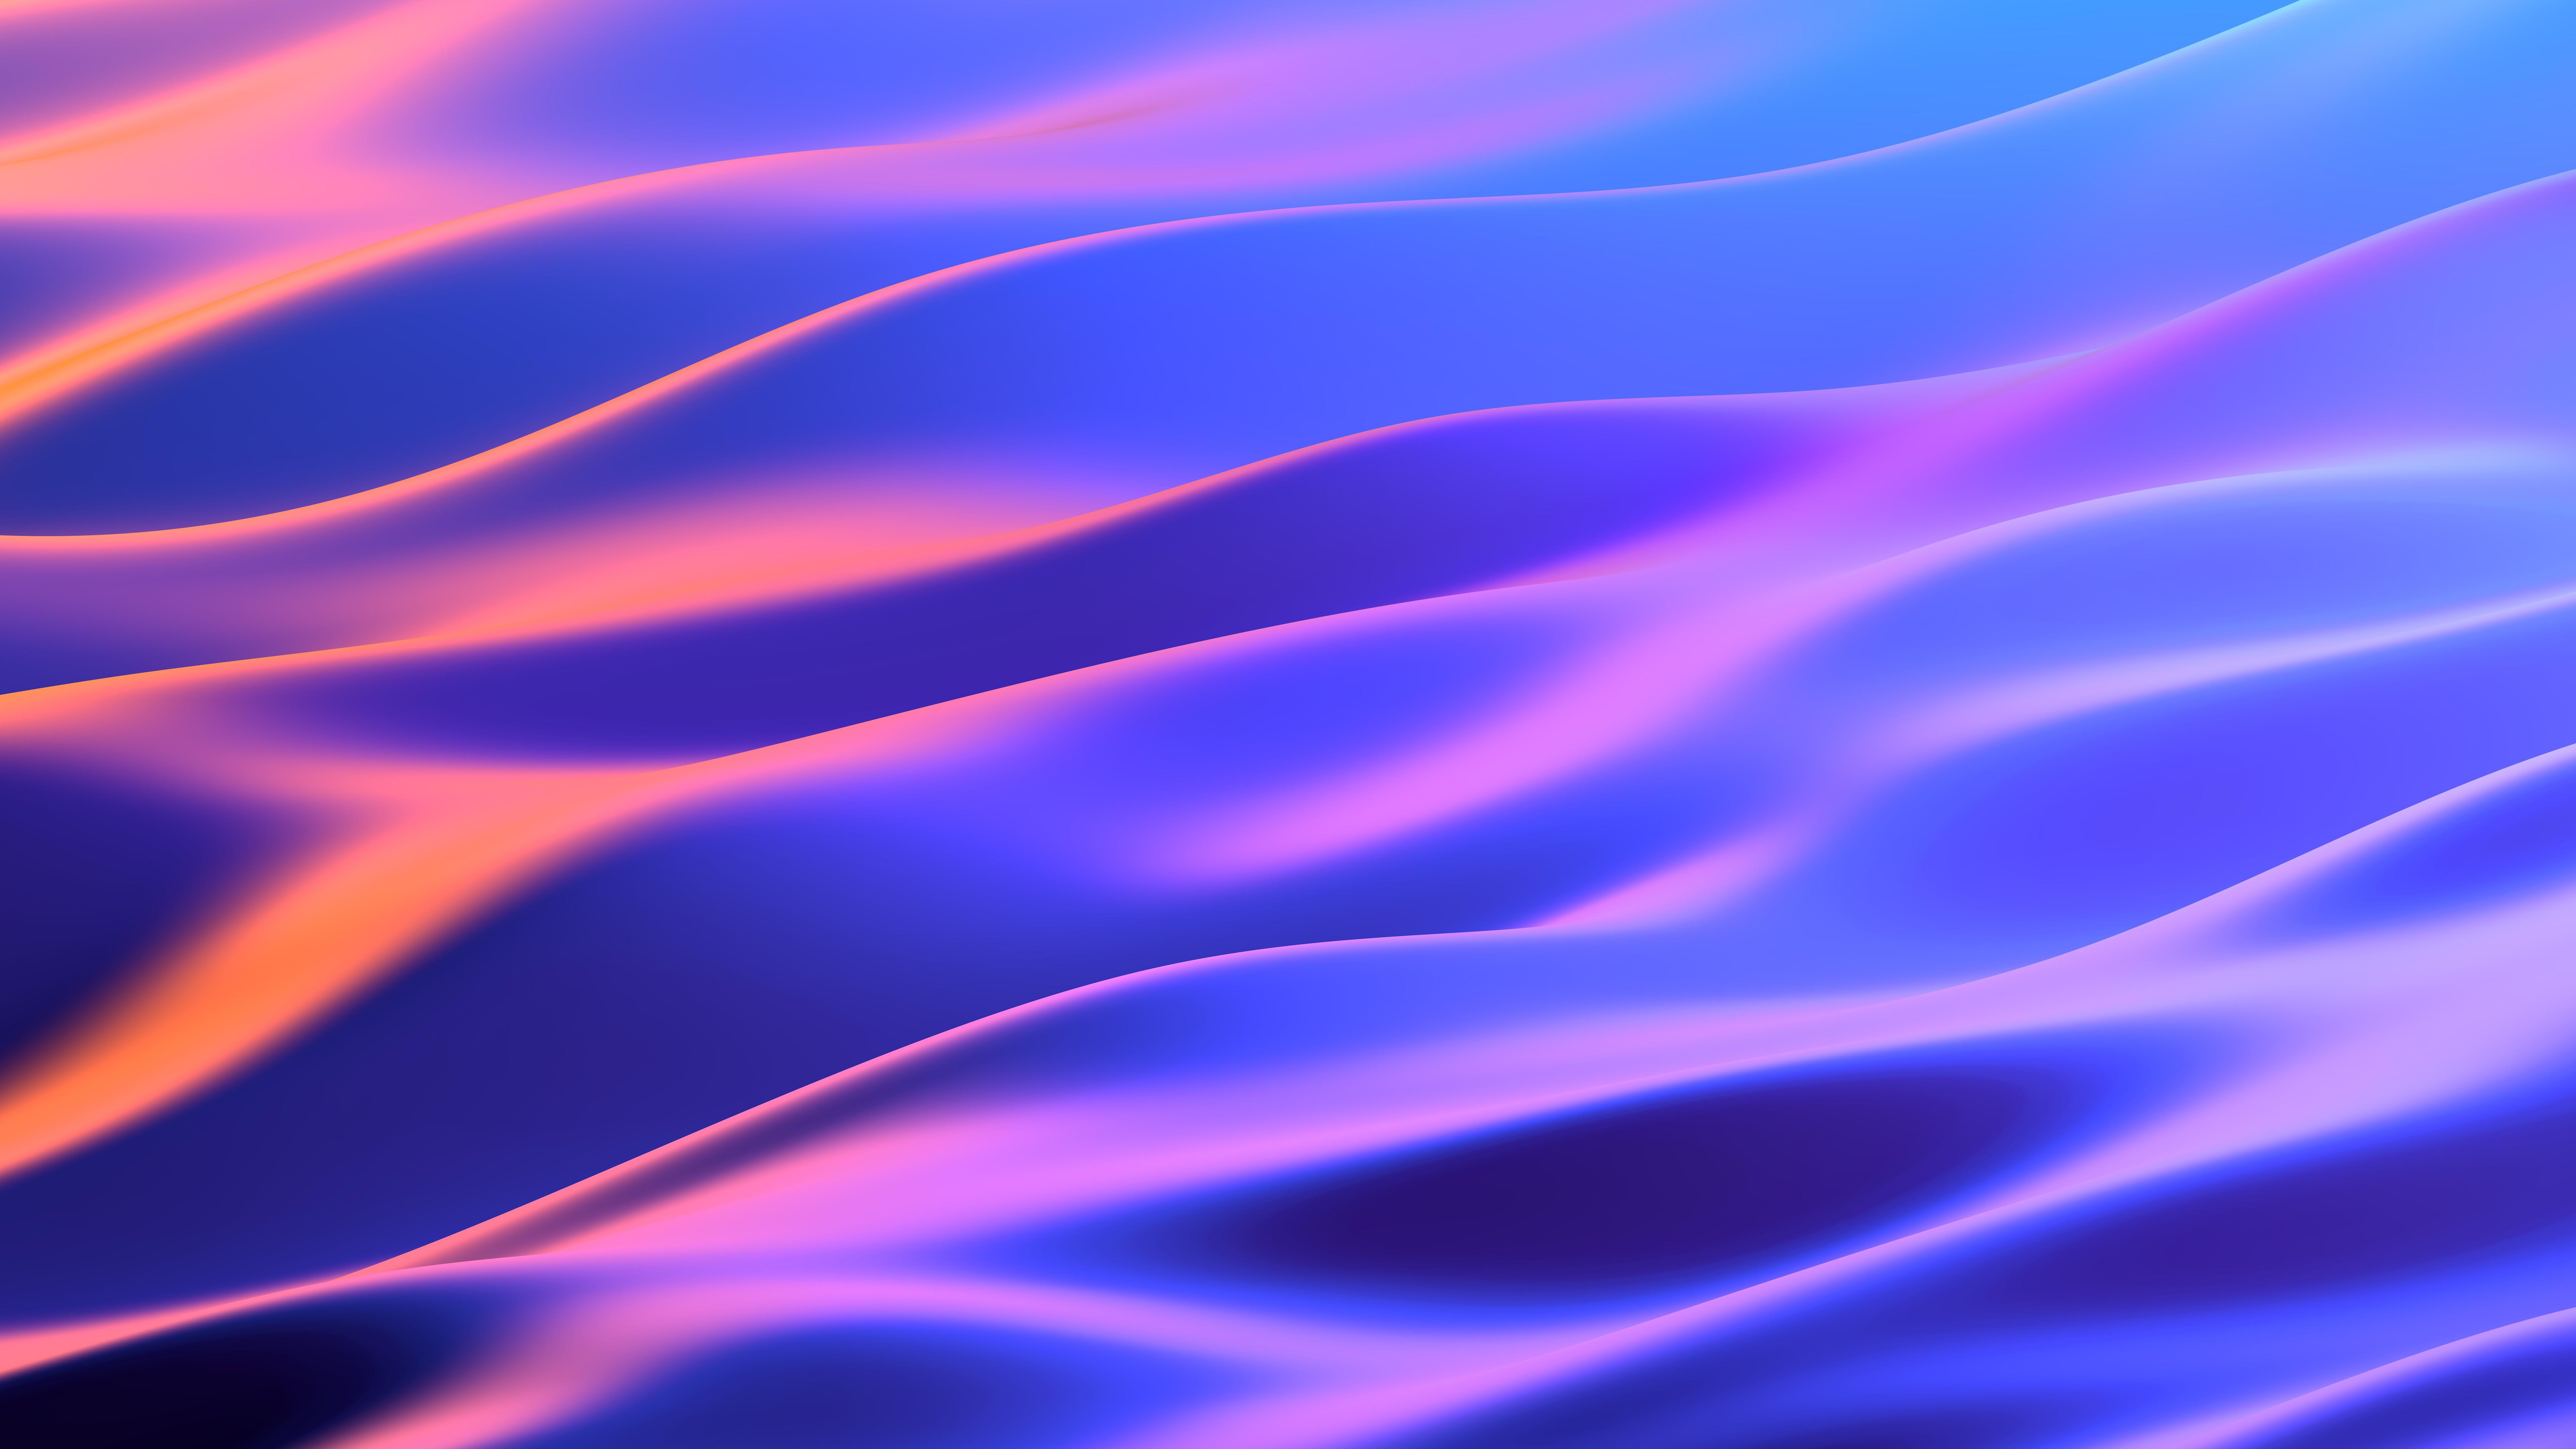 7680 x 4320 · jpeg - Neon Dunes 4K 8K - Download hd wallpapers